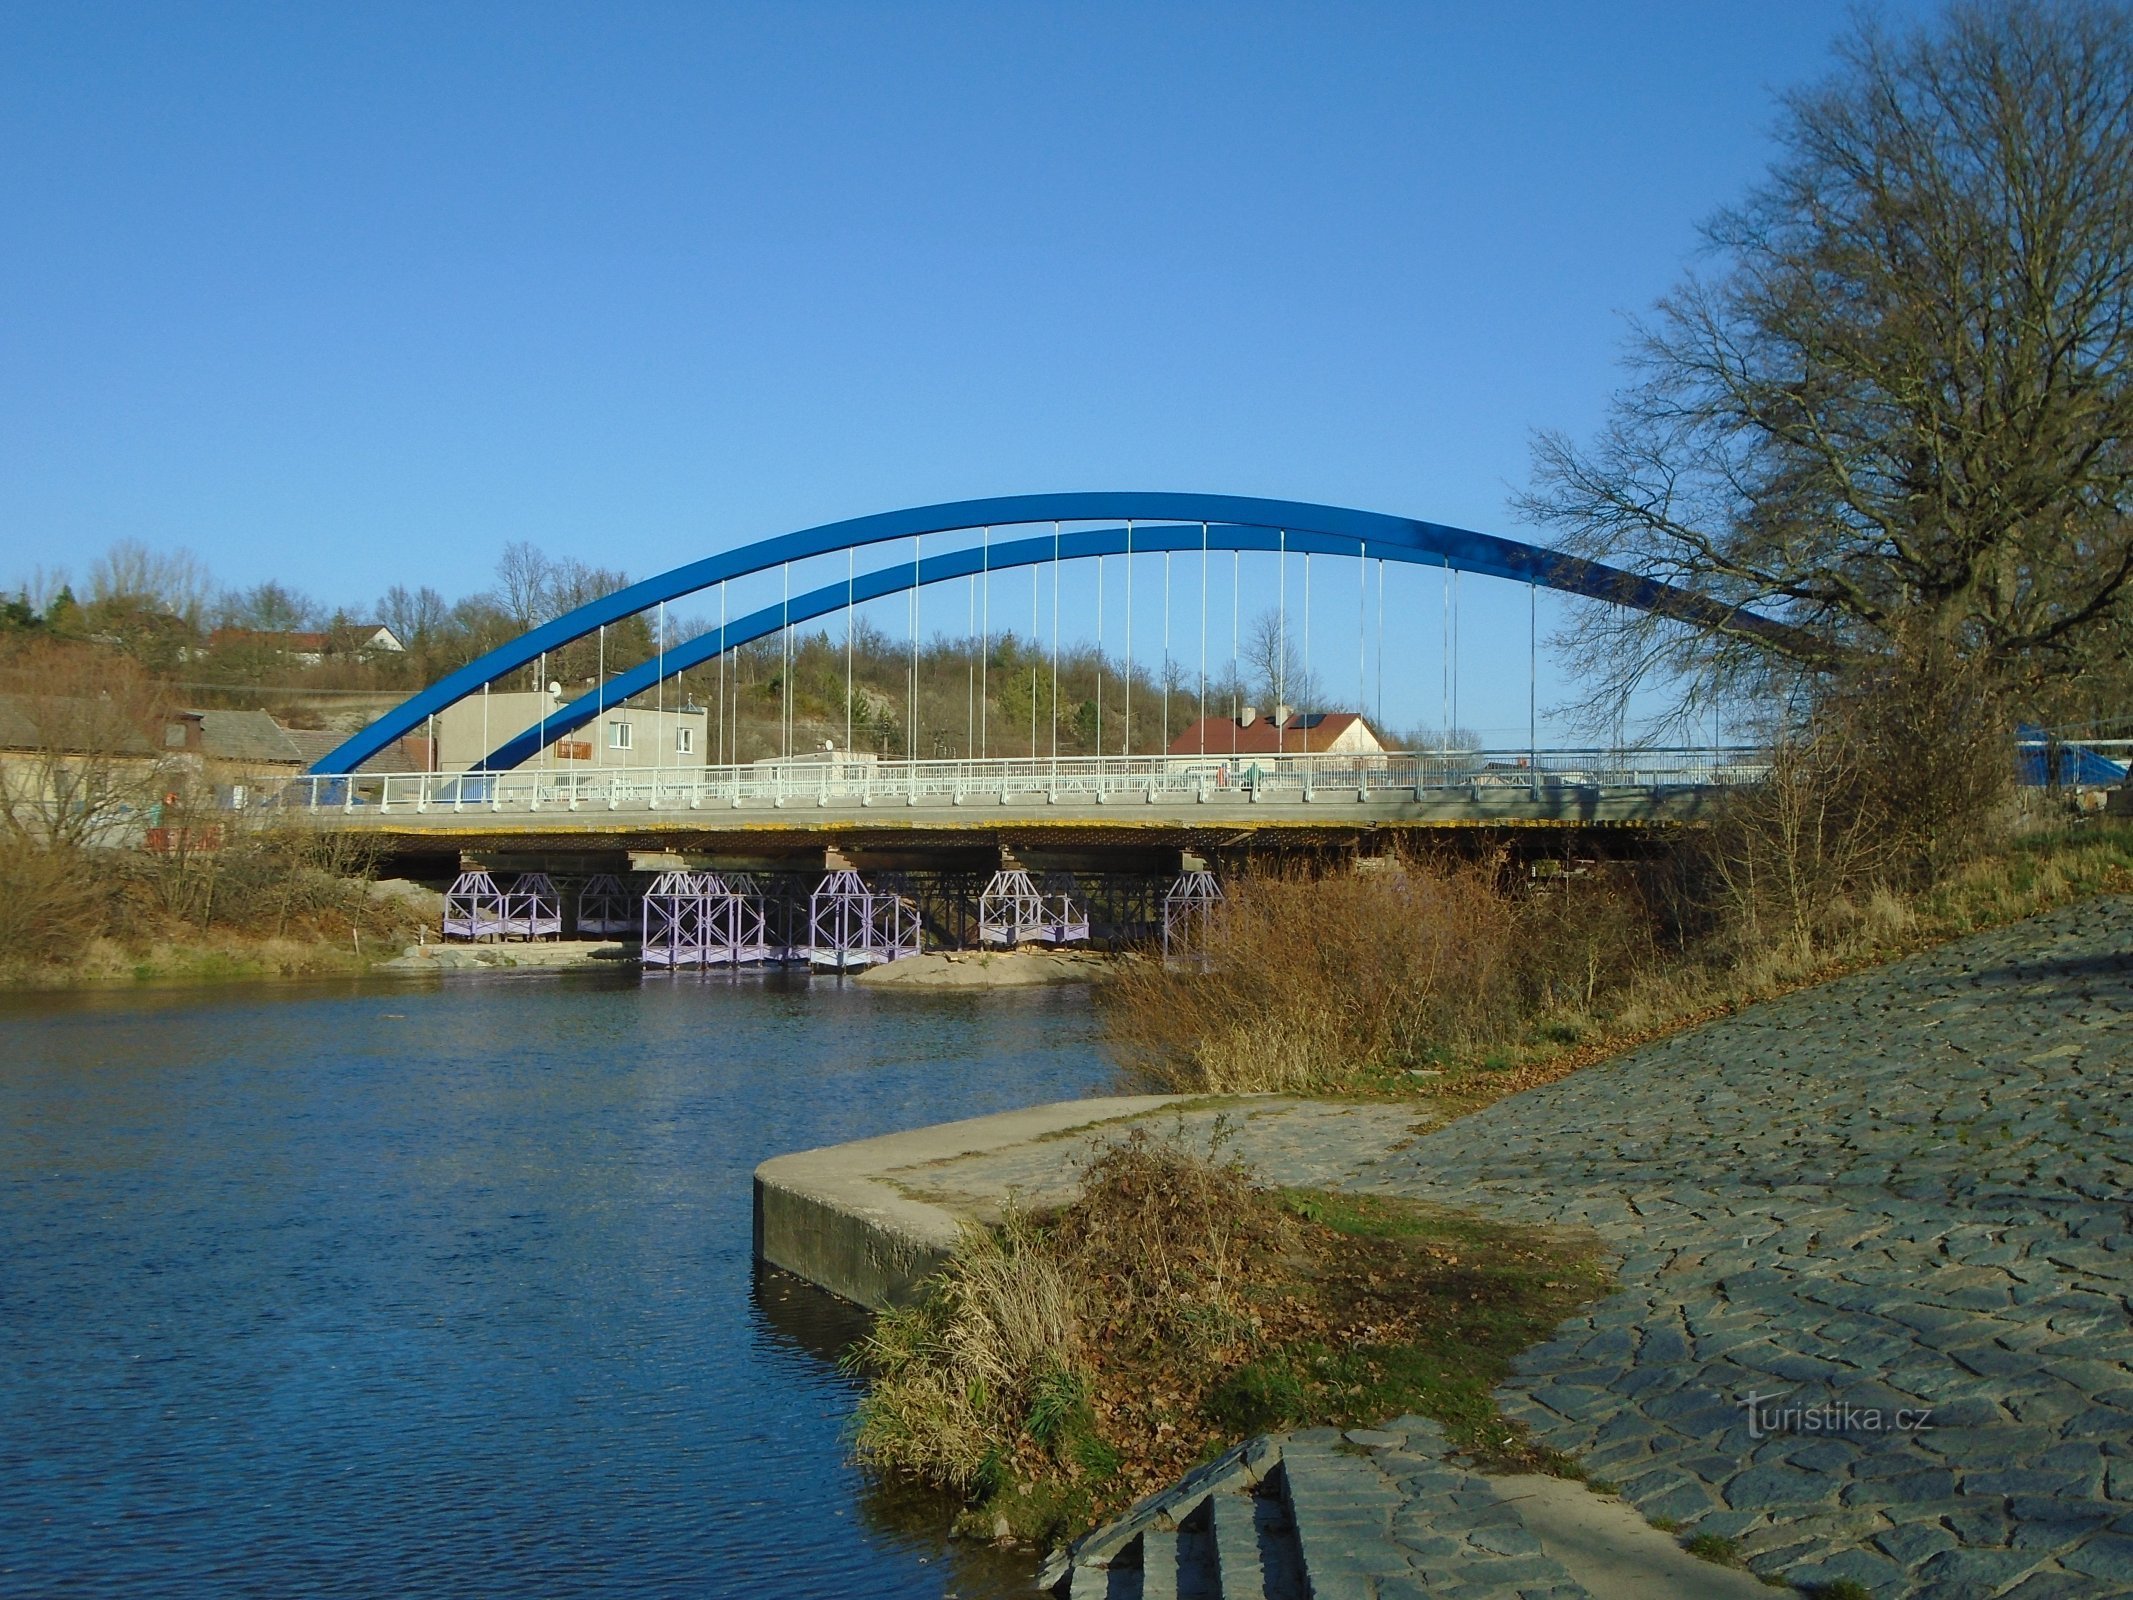 Budowa mostu płk. Šrámka w Svinarach (Hradec Králové, 17.11.2018 sierpnia XNUMX)